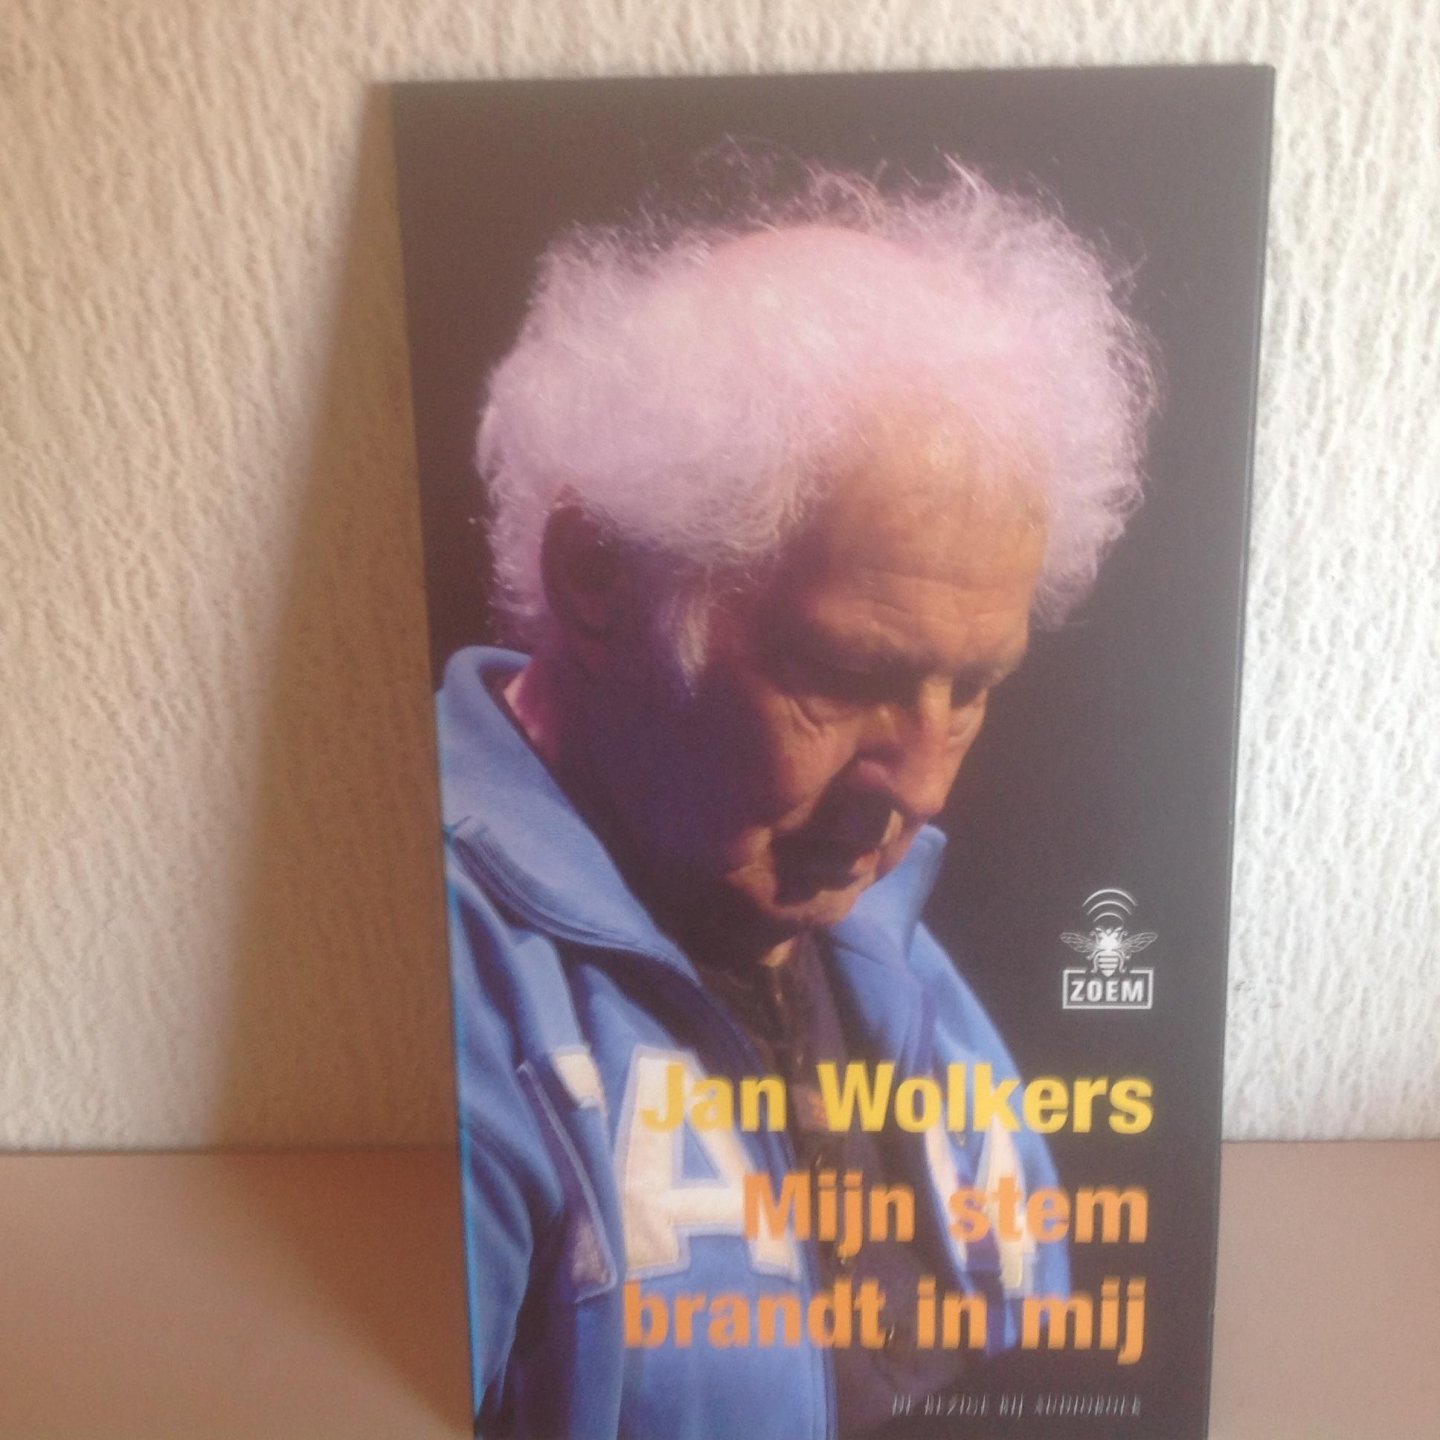 Jan Wolkers - Mijn stem brandt in mij,audio cd ,2 cd,s